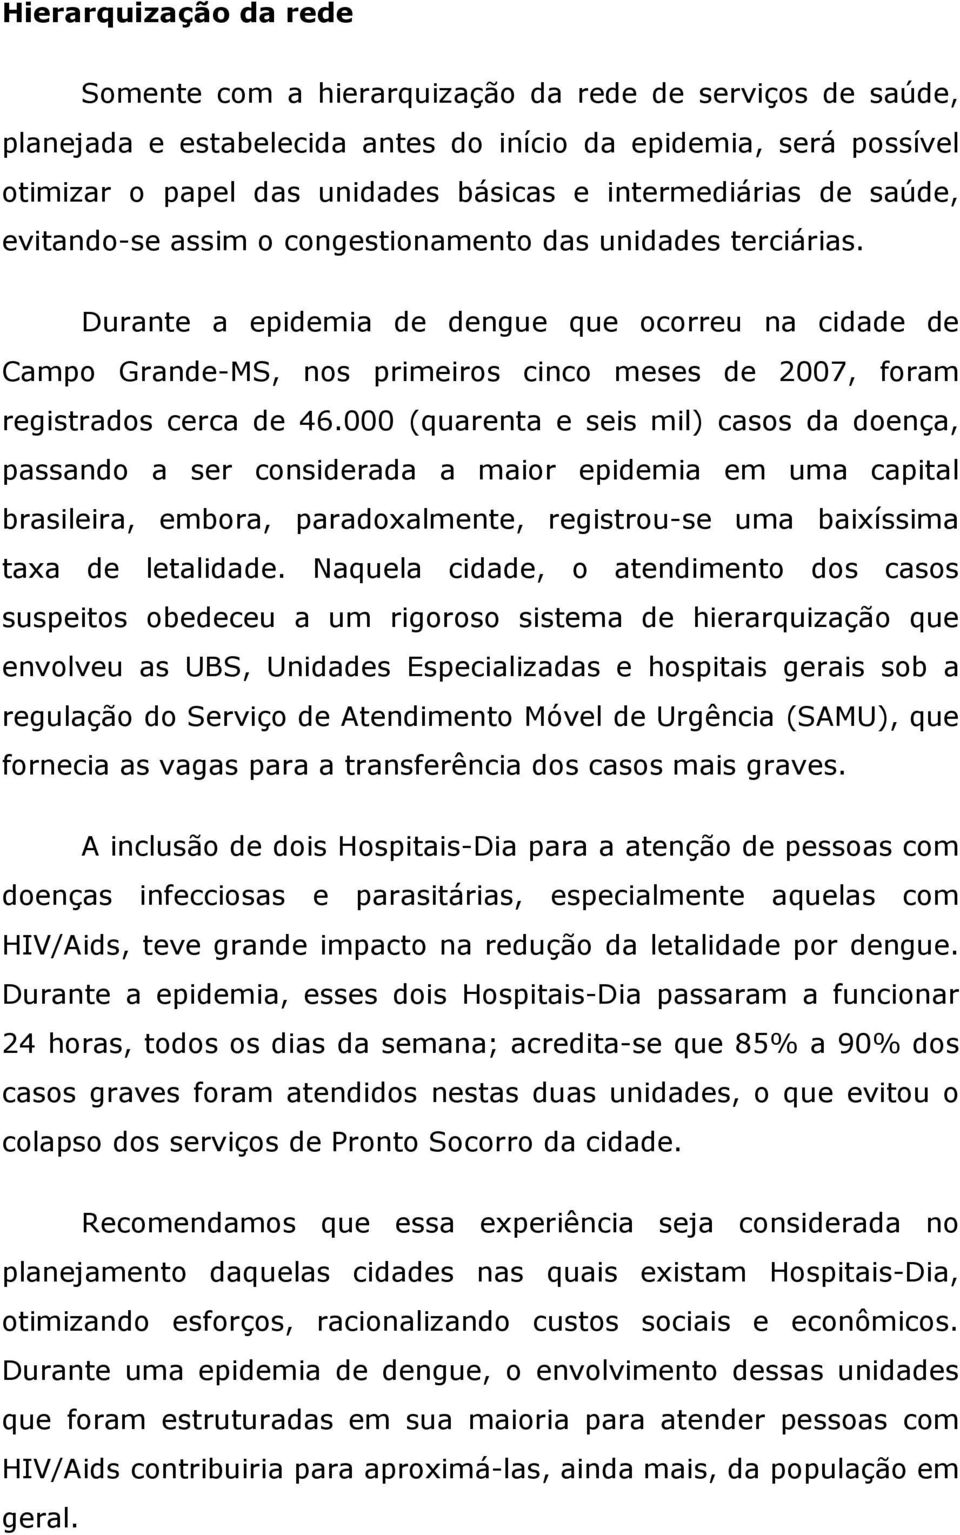 Durante a epidemia de dengue que ocorreu na cidade de Campo Grande-MS, nos primeiros cinco meses de 2007, foram registrados cerca de 46.